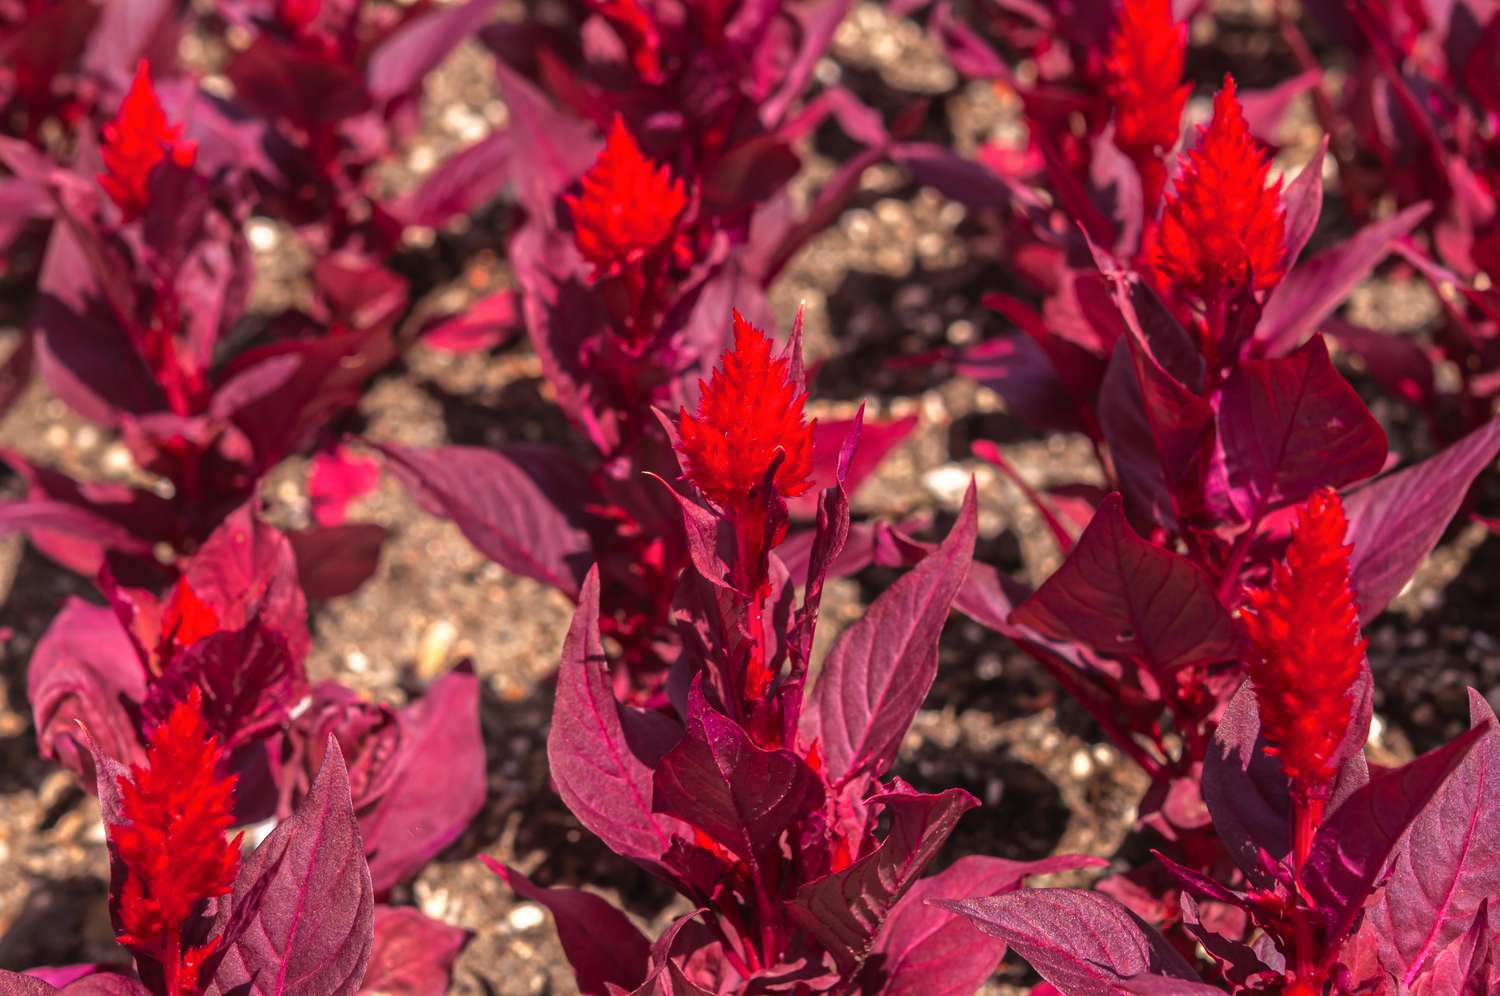 Celosia-Pflanze mit roten flauschigen Blütenköpfen, umgeben von kastanienbraunen Blättern im Sonnenlicht